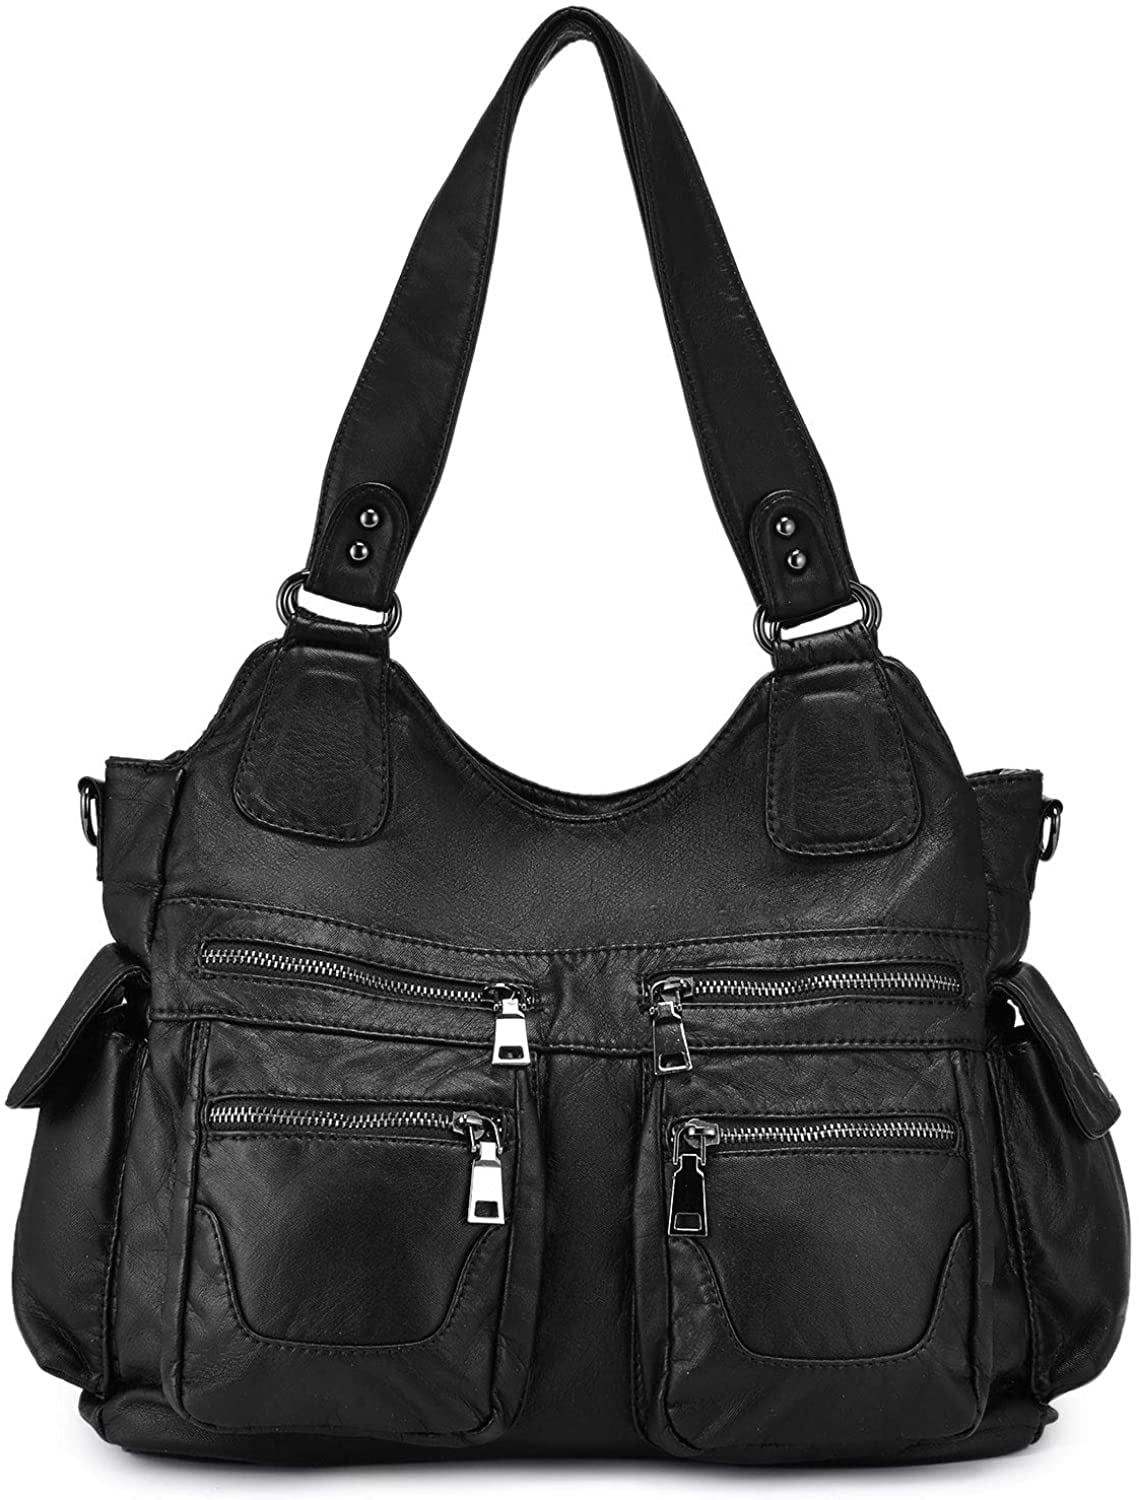 Women PU Leather Handbag Shoulder Bag Tote Purse Messenger Satchel Hobo Bag WL 